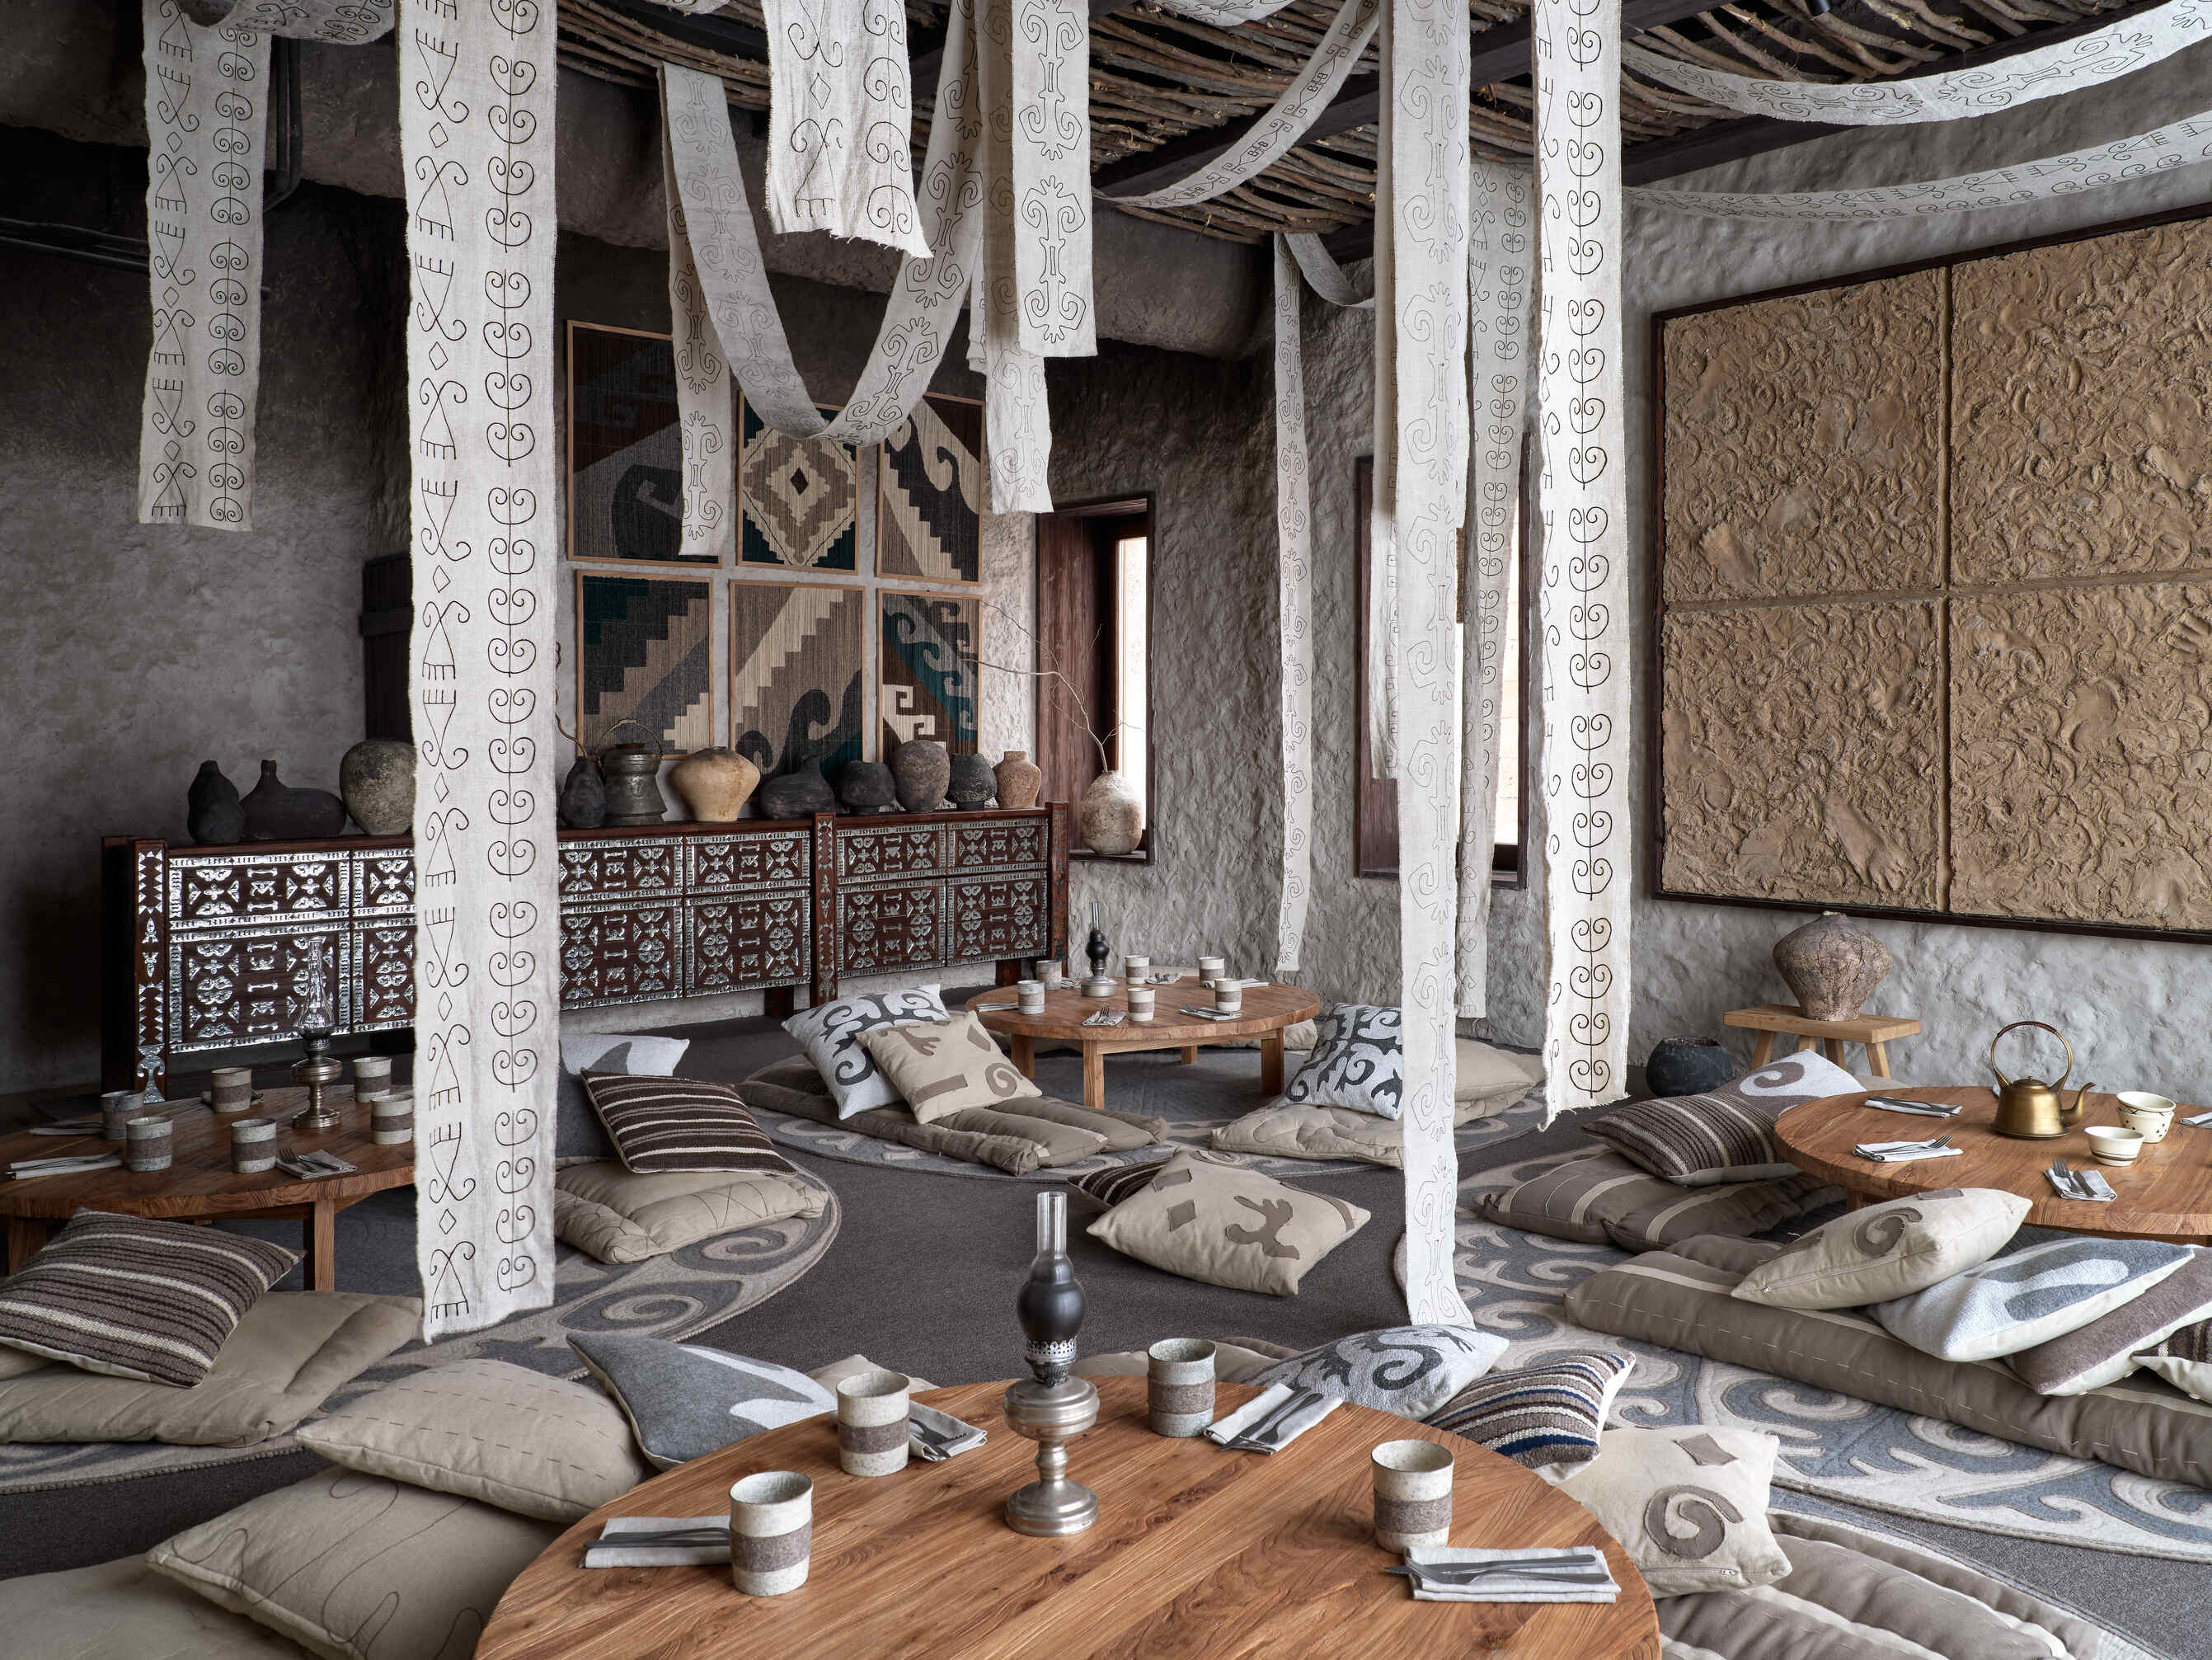 自天花板垂掛而下的亞麻刺繡布條，為 Auyl Restaurant 營造出神秘的藝術風情。